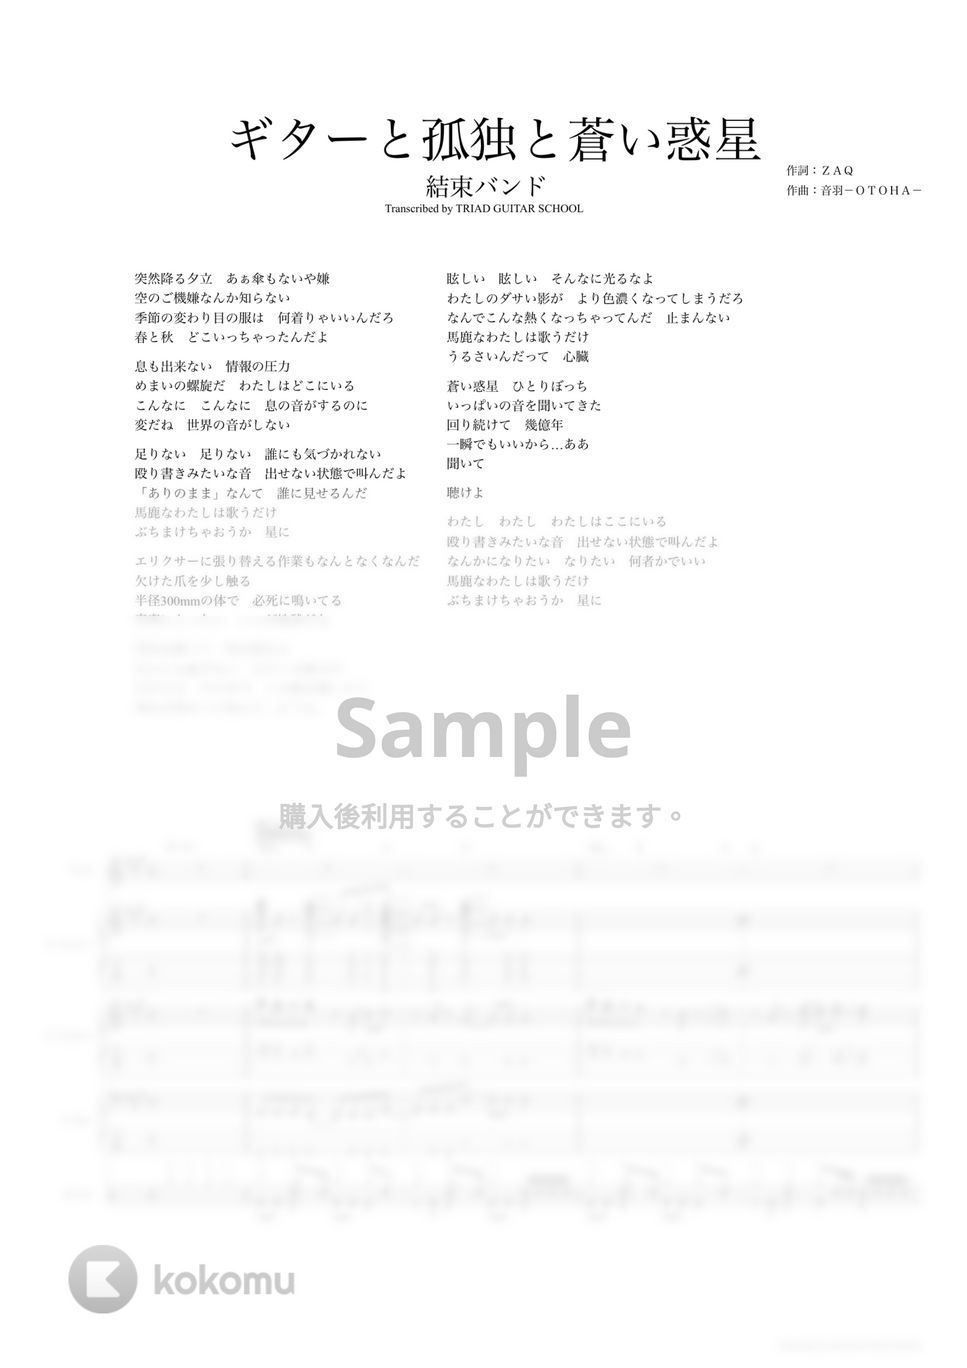 結束バンド - ギターと孤独と蒼い惑星 (バンドスコア) by TRIAD GUITAR SCHOOL